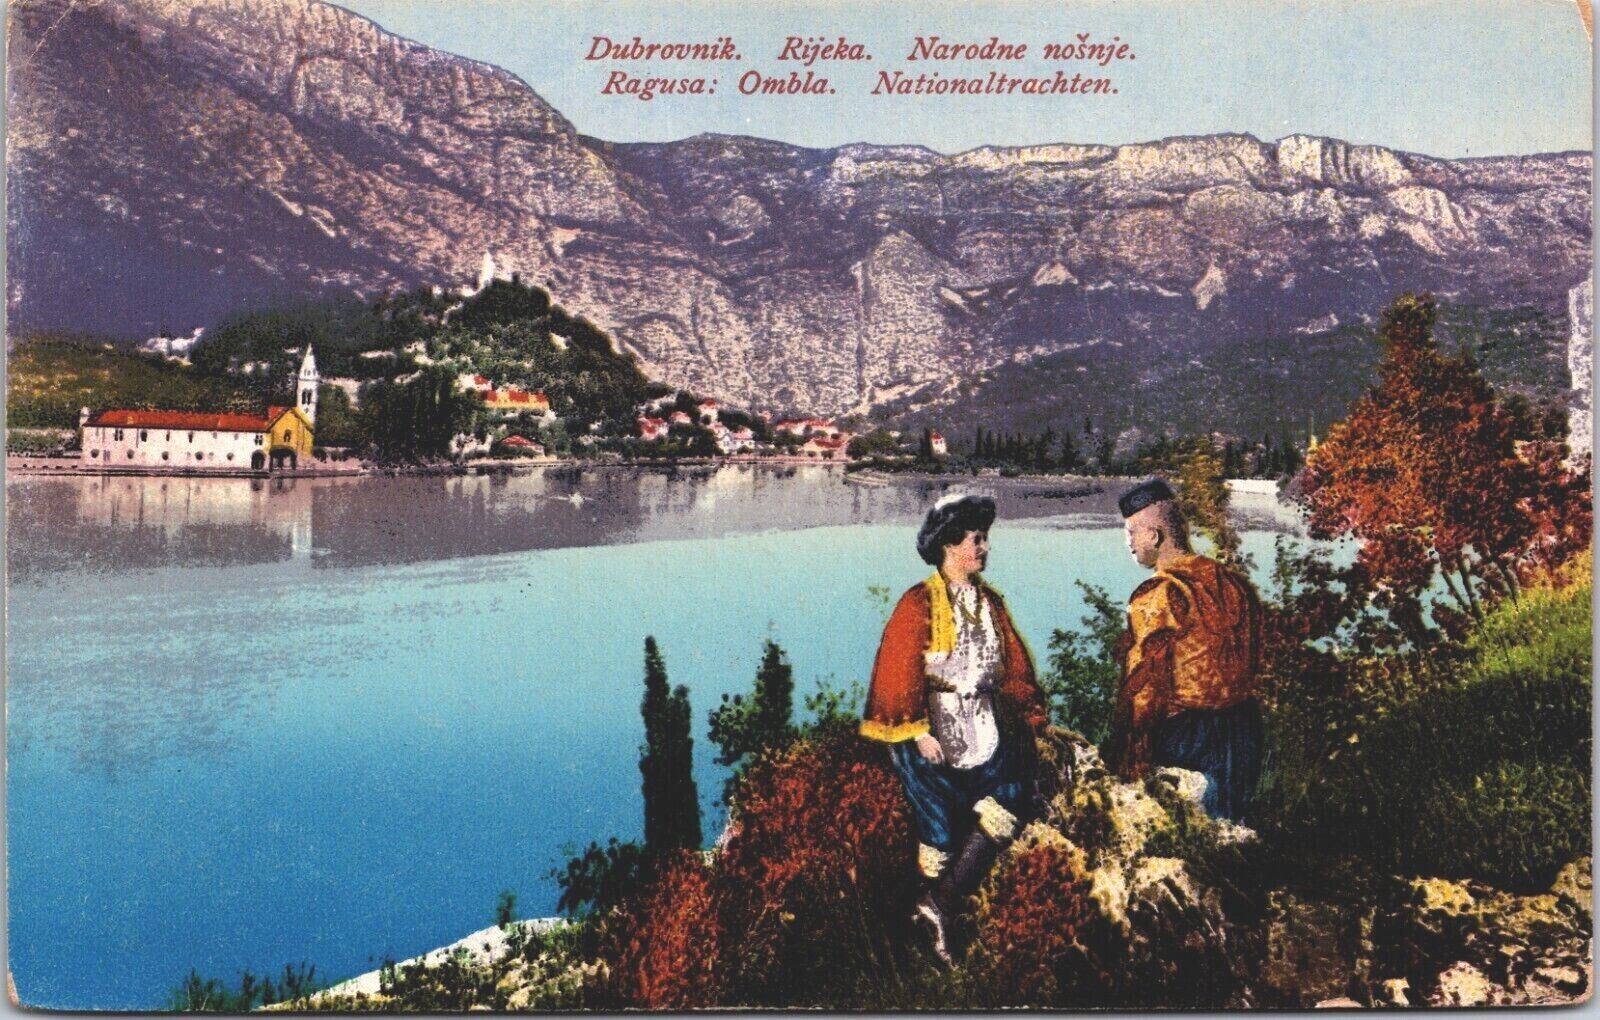 Croatia Dubrovnik Rijeka Narodne Nošnje Vintage Postcard 09.10